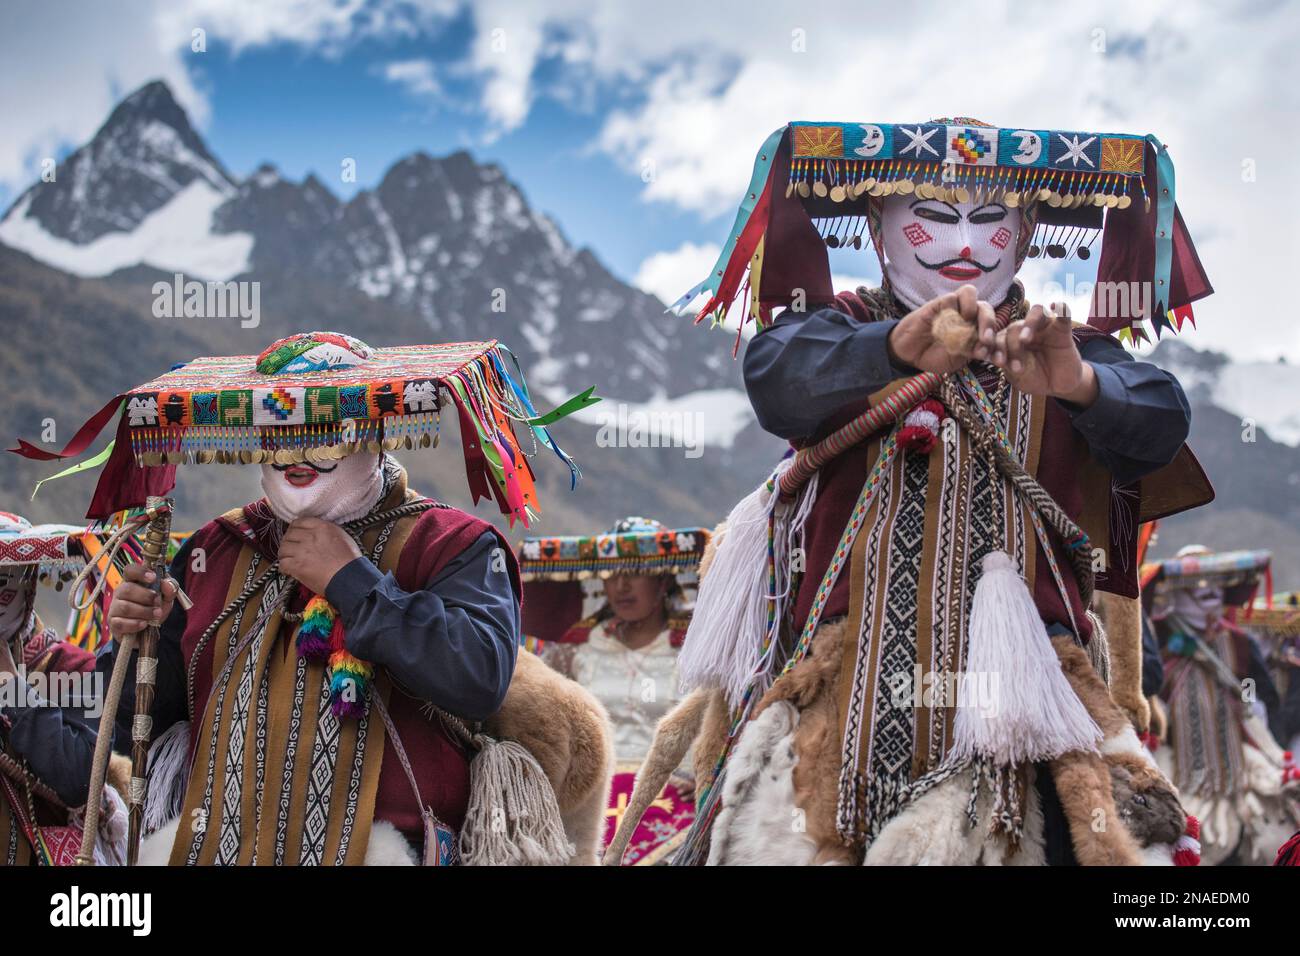 Ukukus en costume traditionnel de festival, partie de la mythologie inca ; Cusco, Pérou Banque D'Images